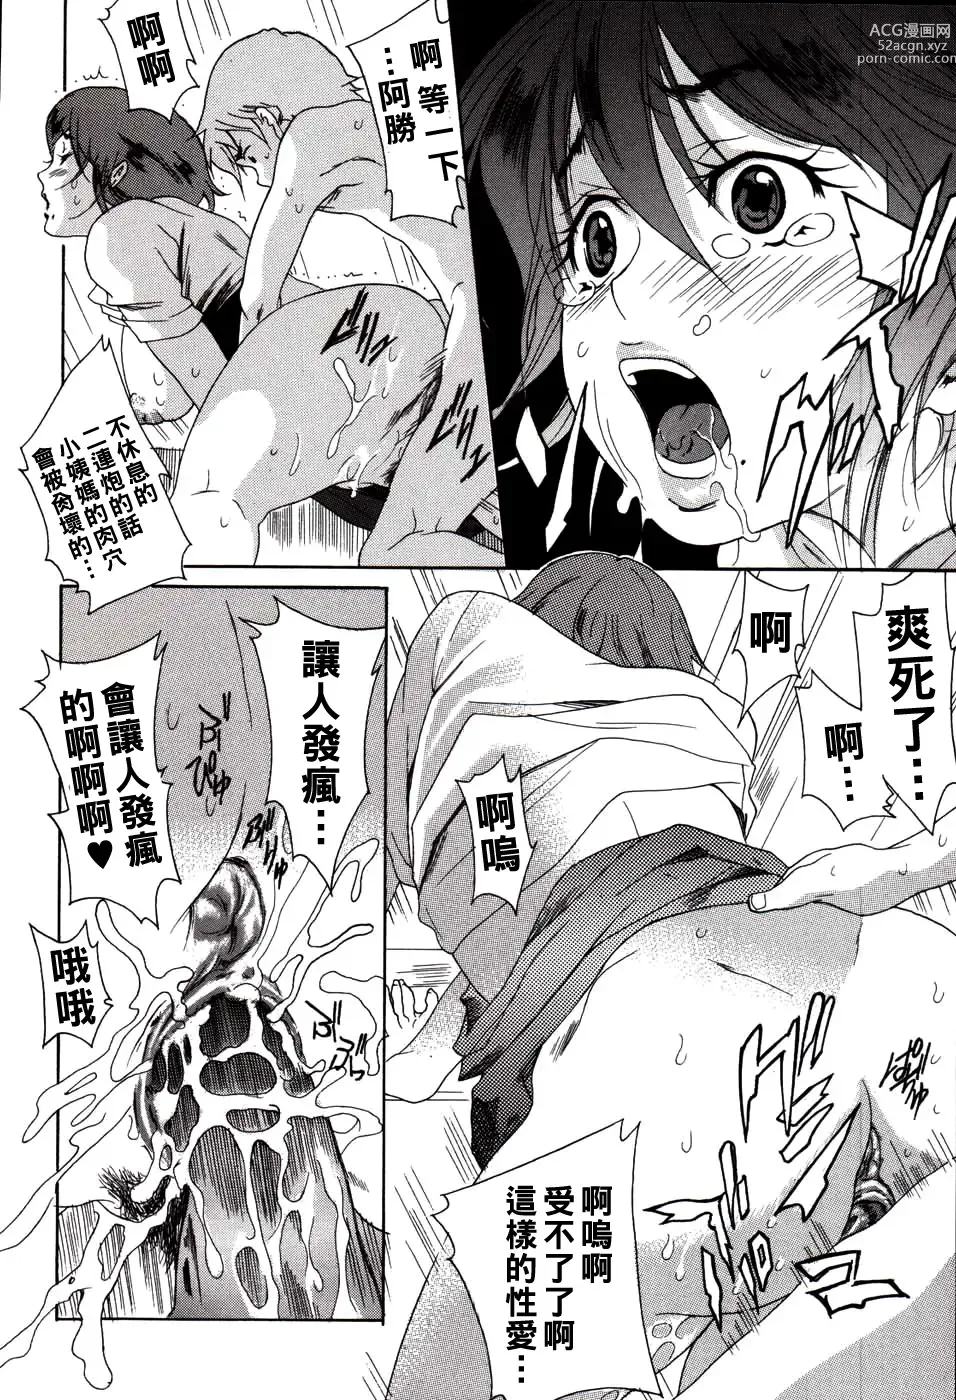 Page 14 of manga Kareshi no Jijou